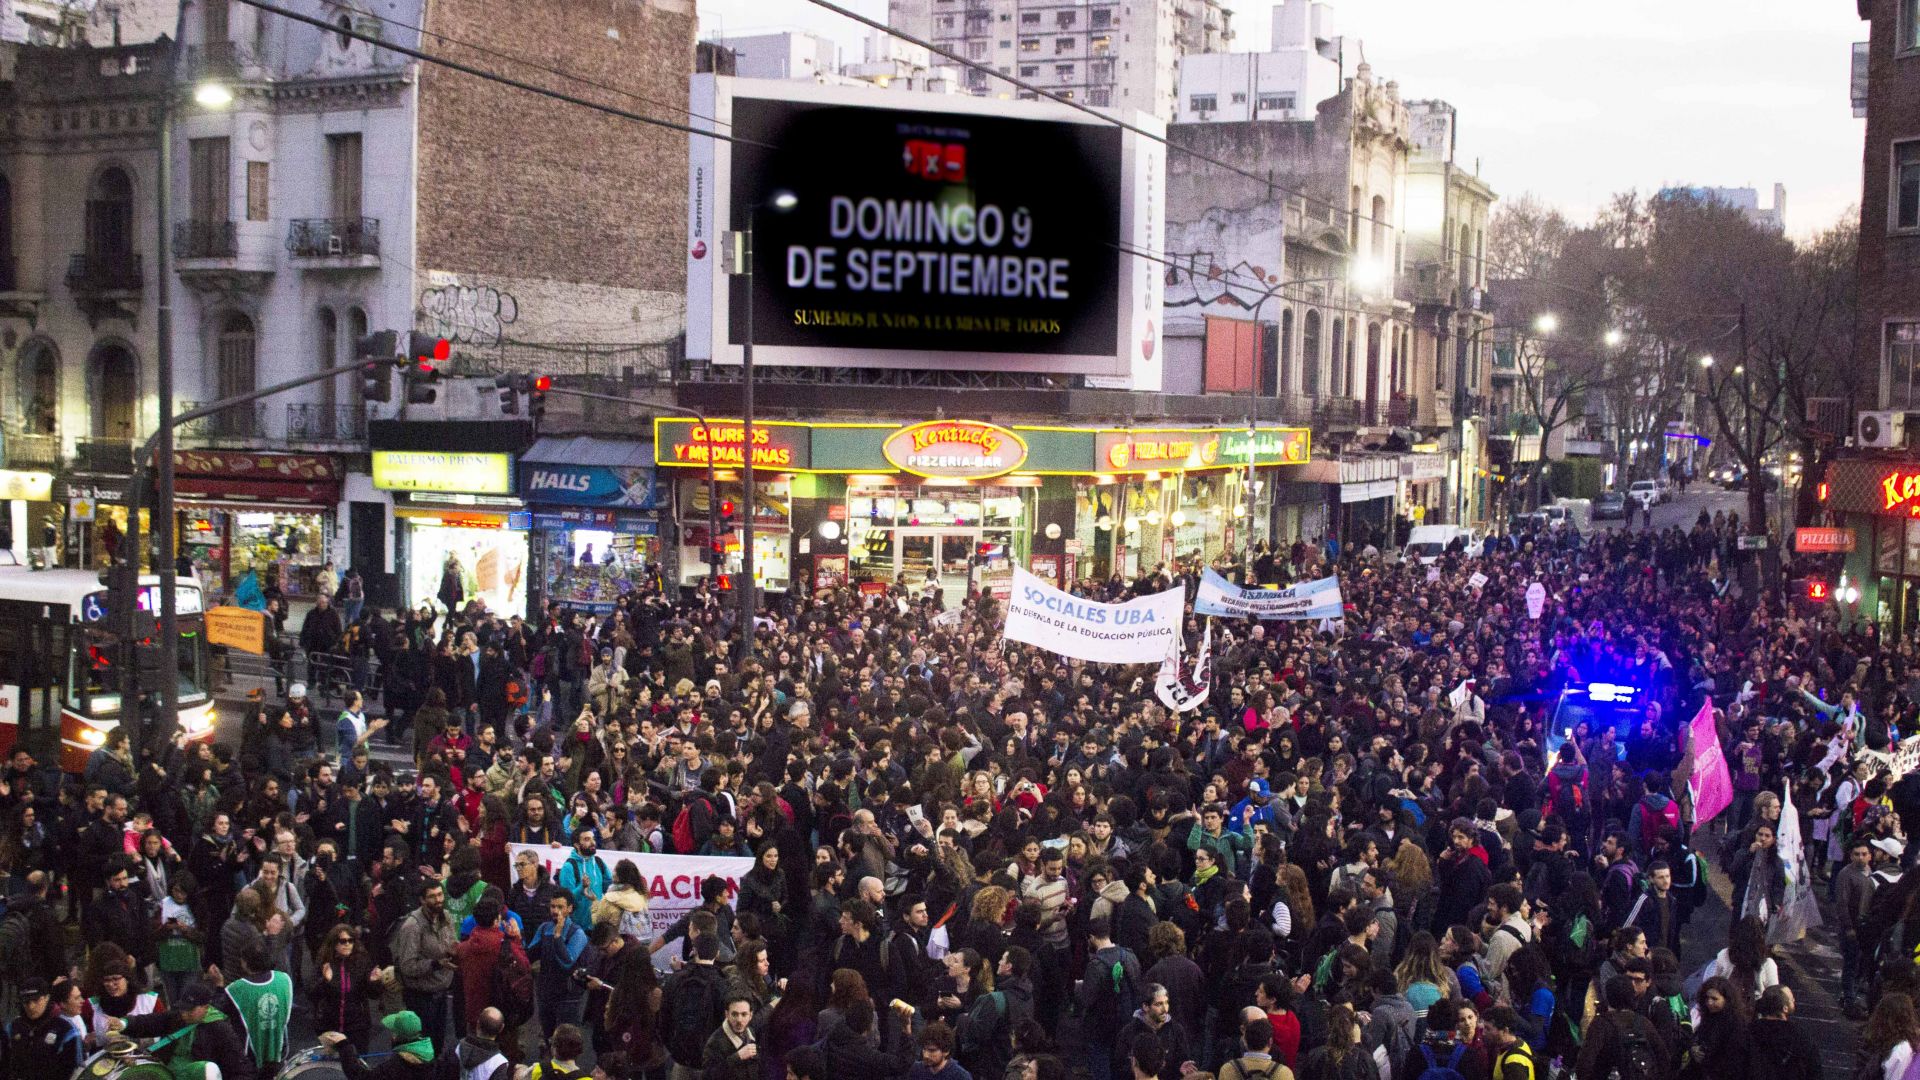 Peligra la continuidad de investigación científica en la Argentina